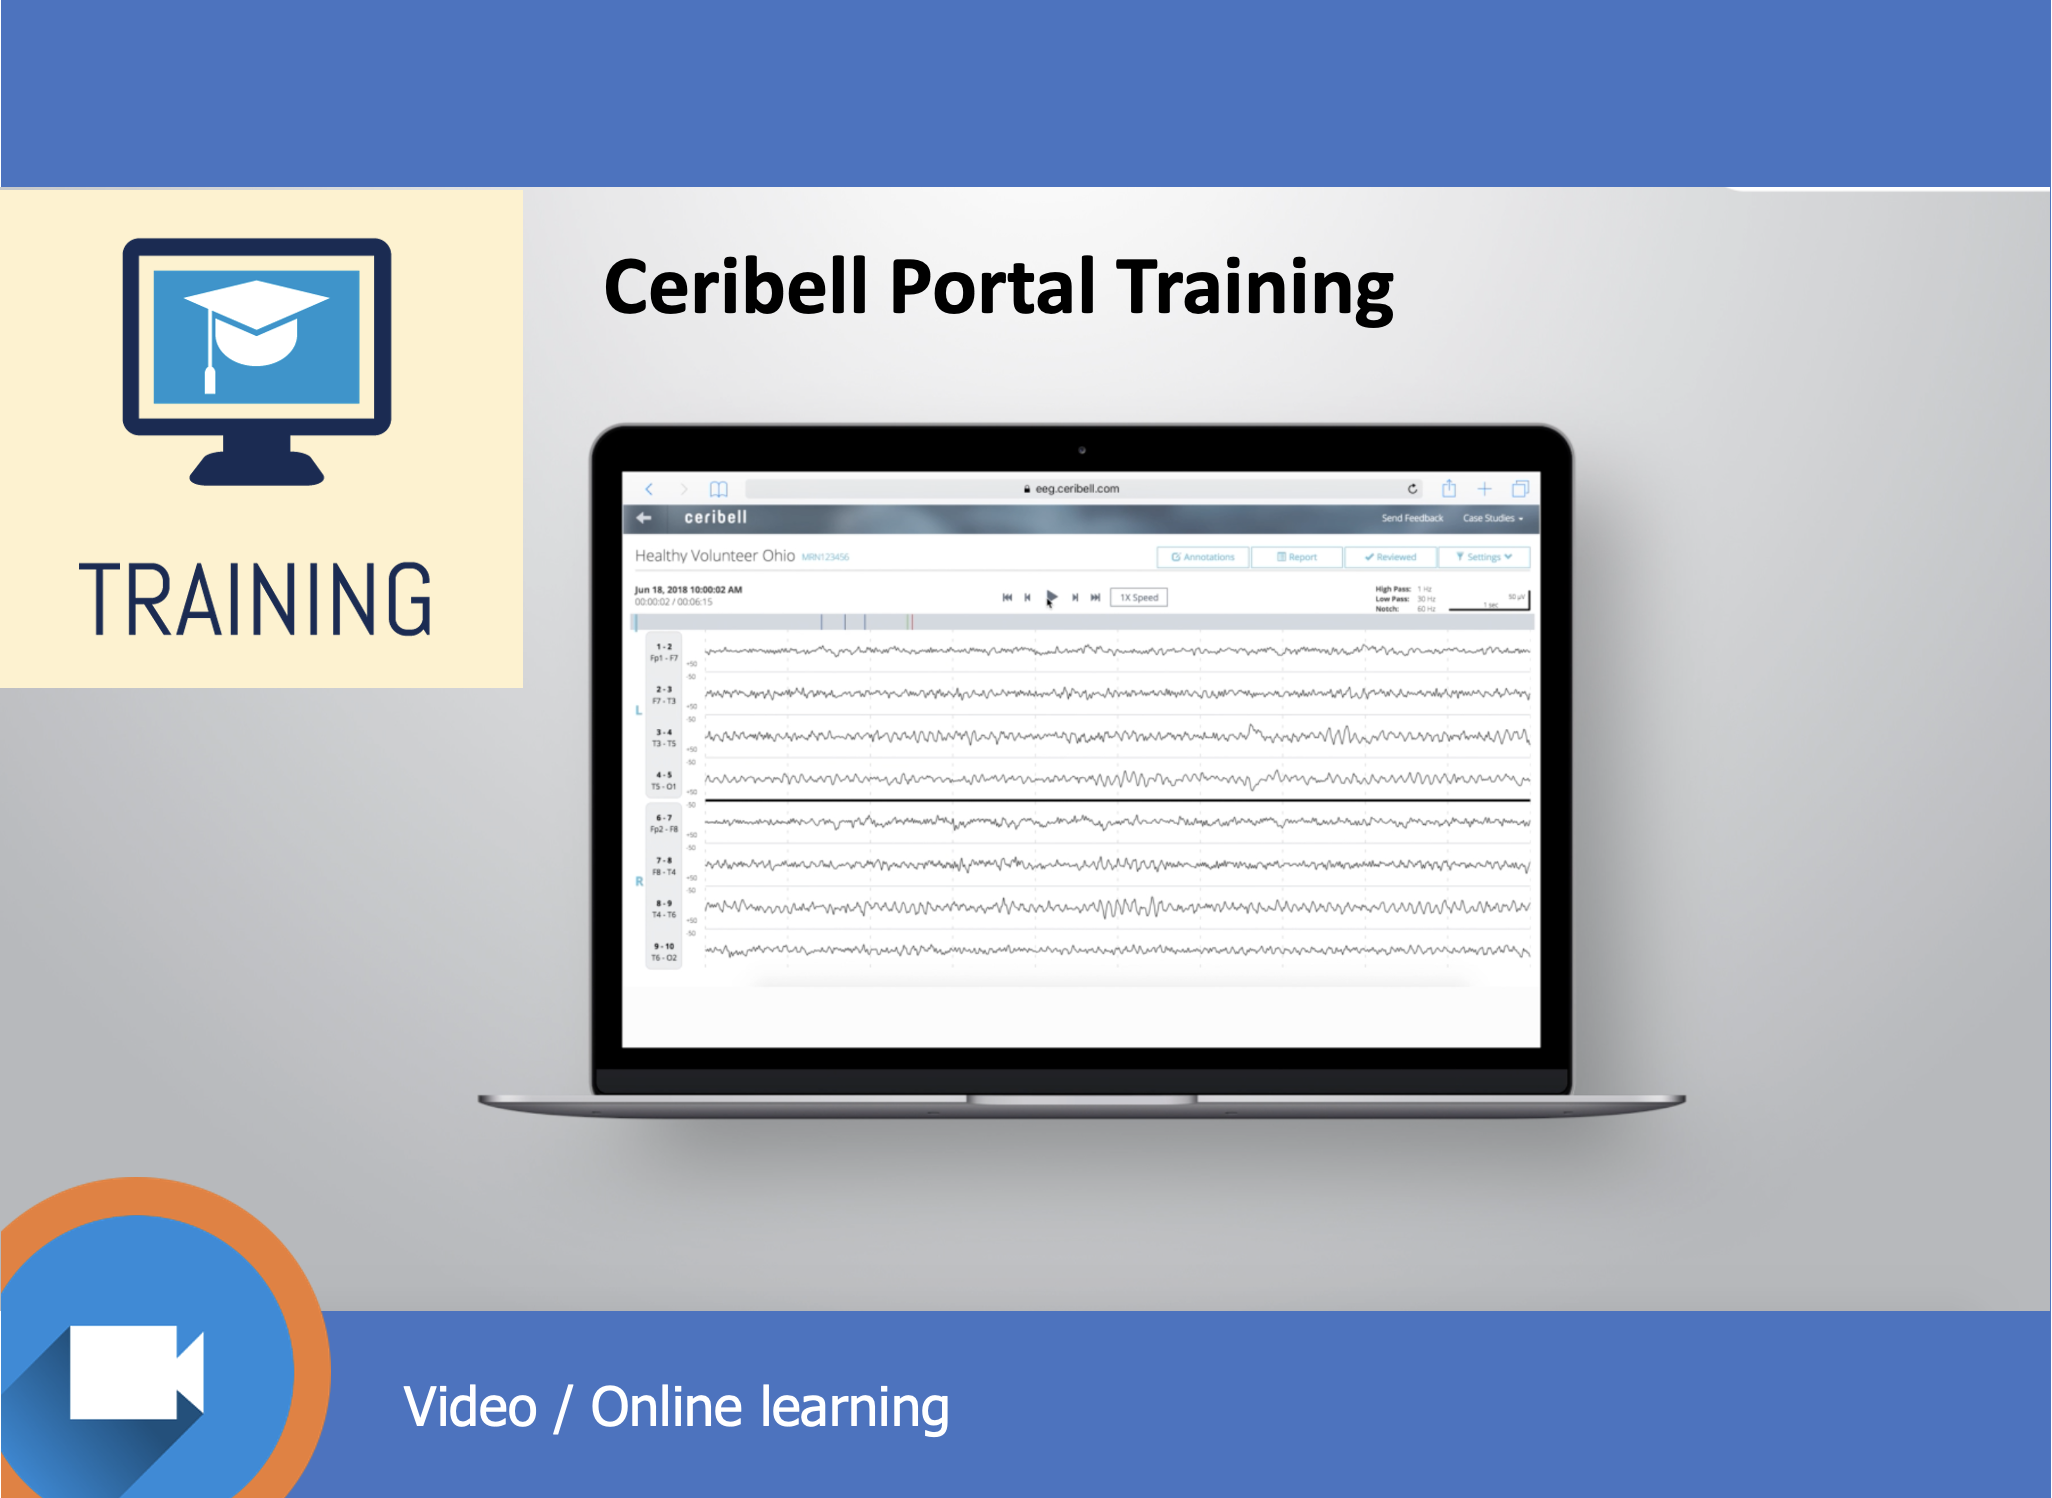 Ceribell Portal Training